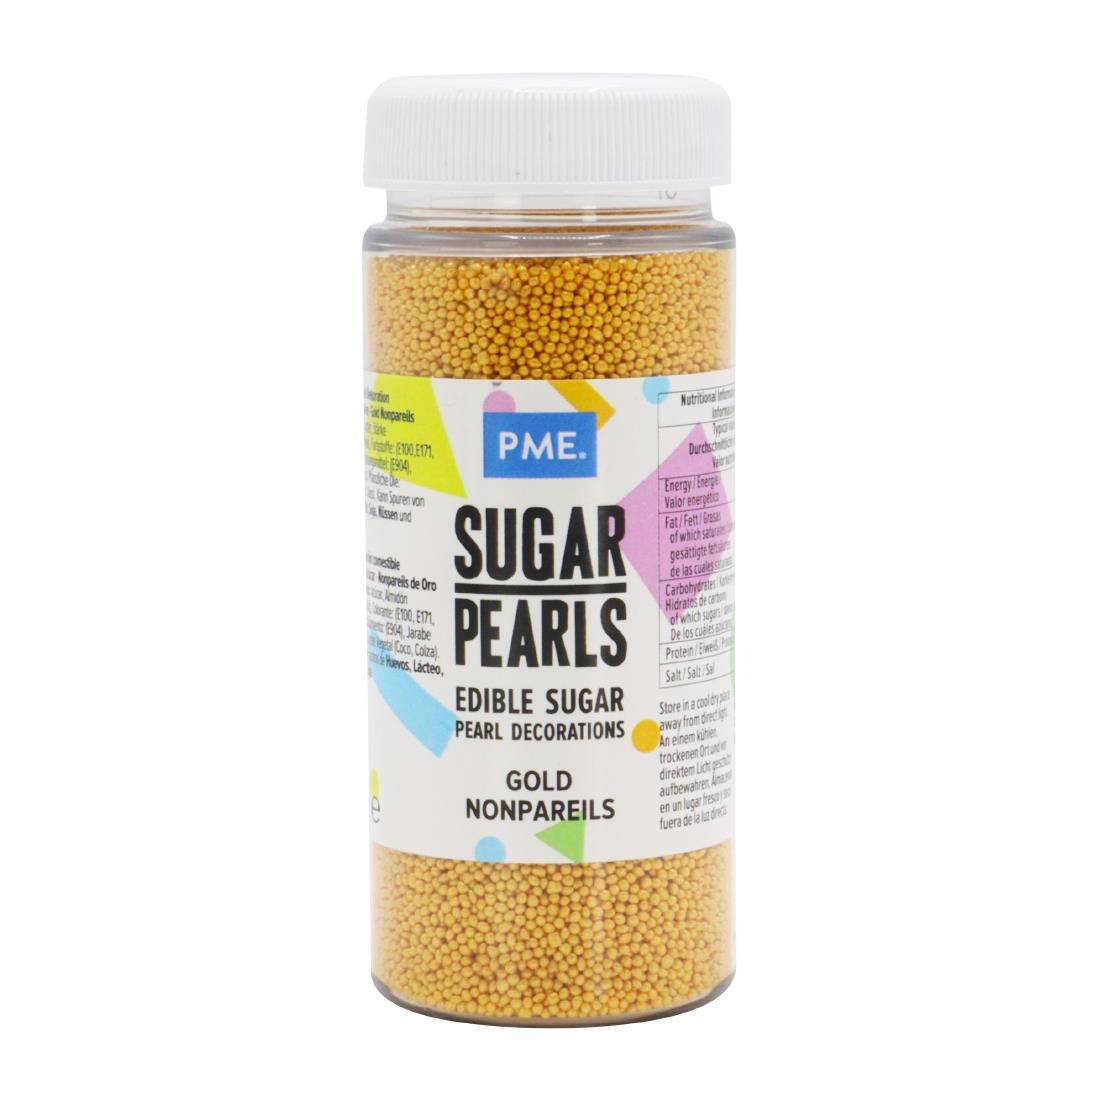 PME Sugar Pearls Nonpareils 100g - Gold (HU216)